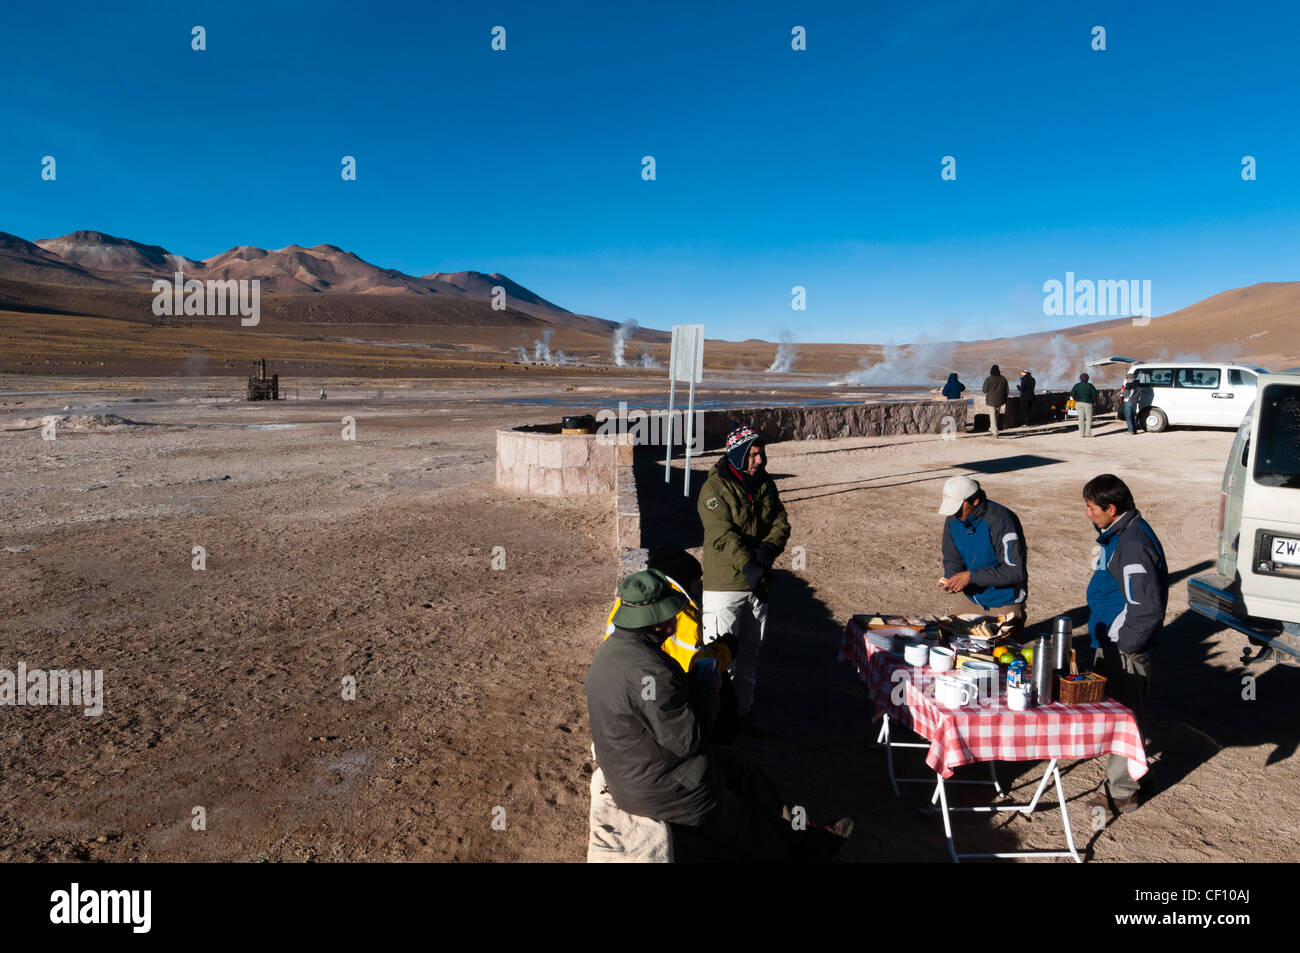 El Tatio Geysire, Atacama Wüste, Chile. Stockfoto